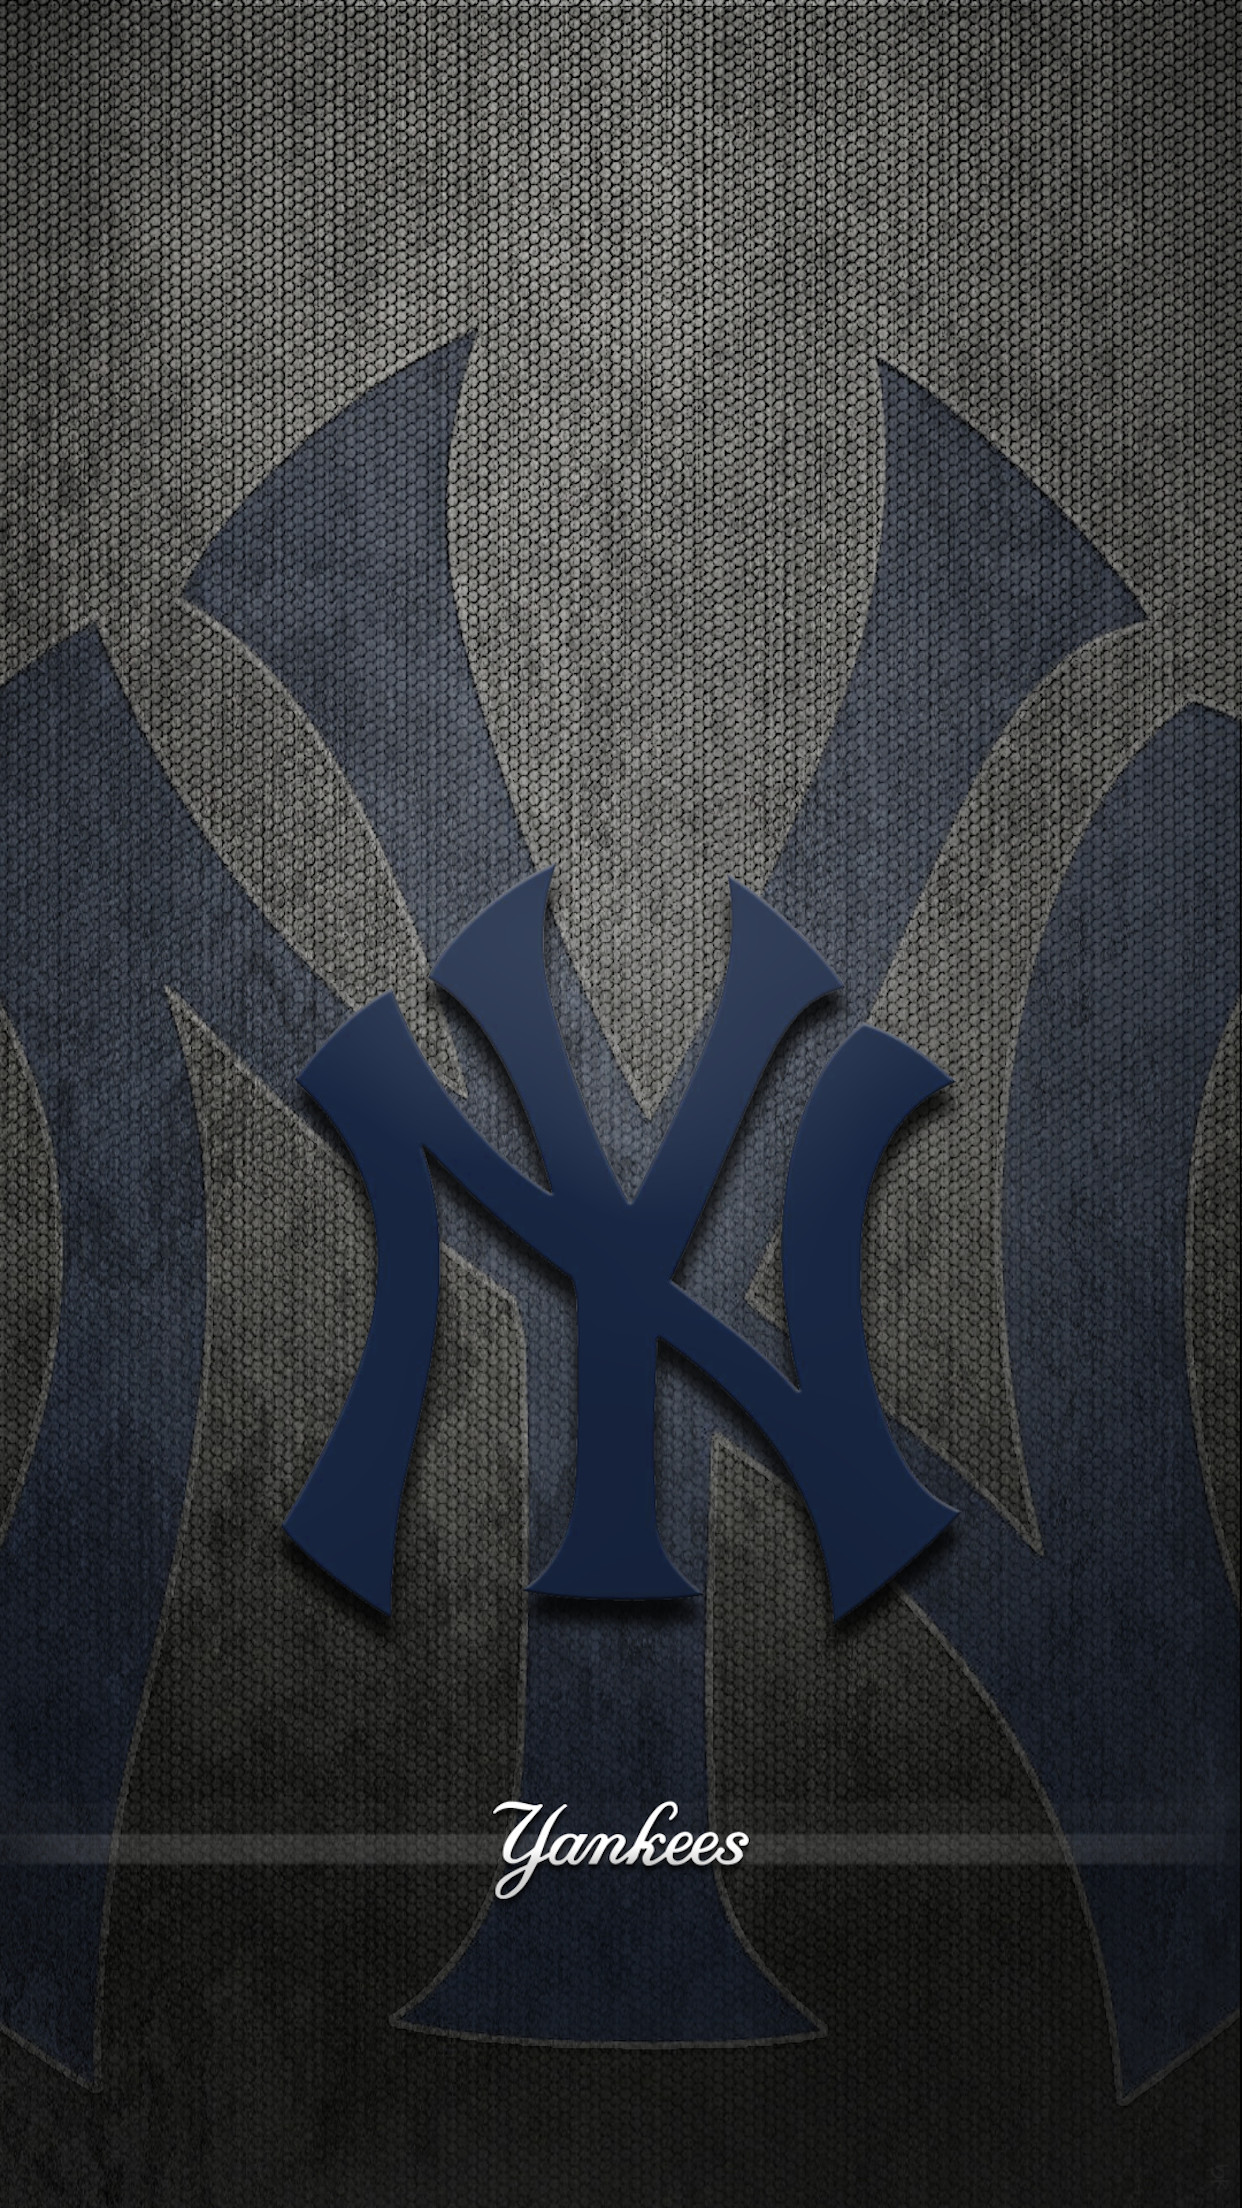 Yankees Logo Wallpaper (64+ images)